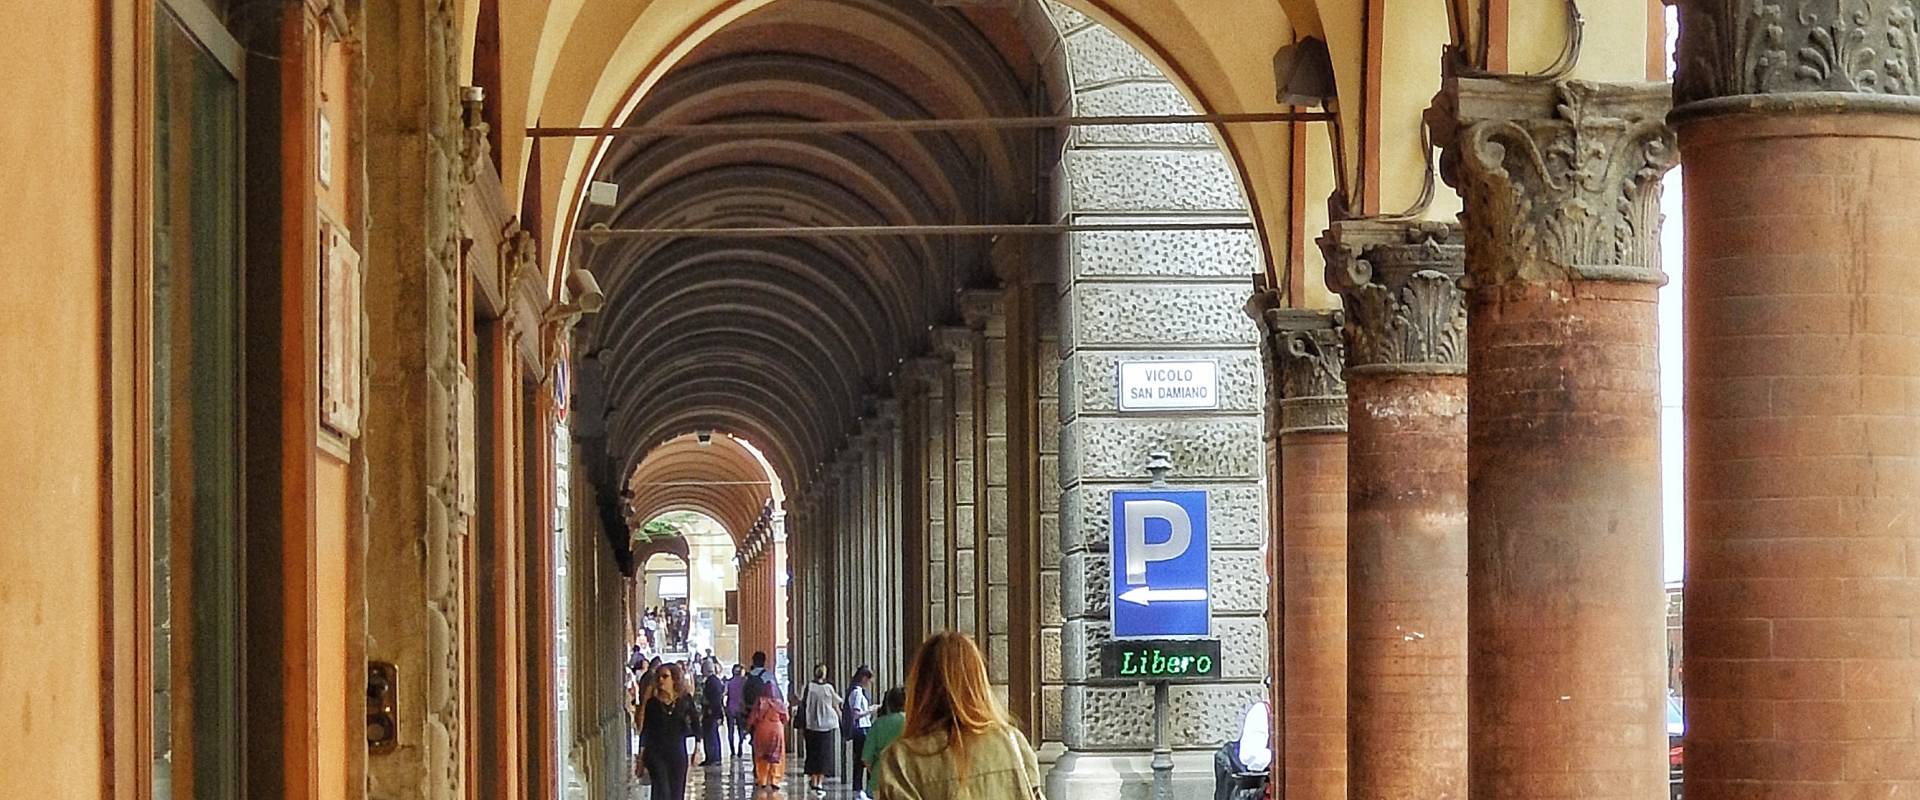 Bellissimo Portico di via Farini photo by Maraangelini